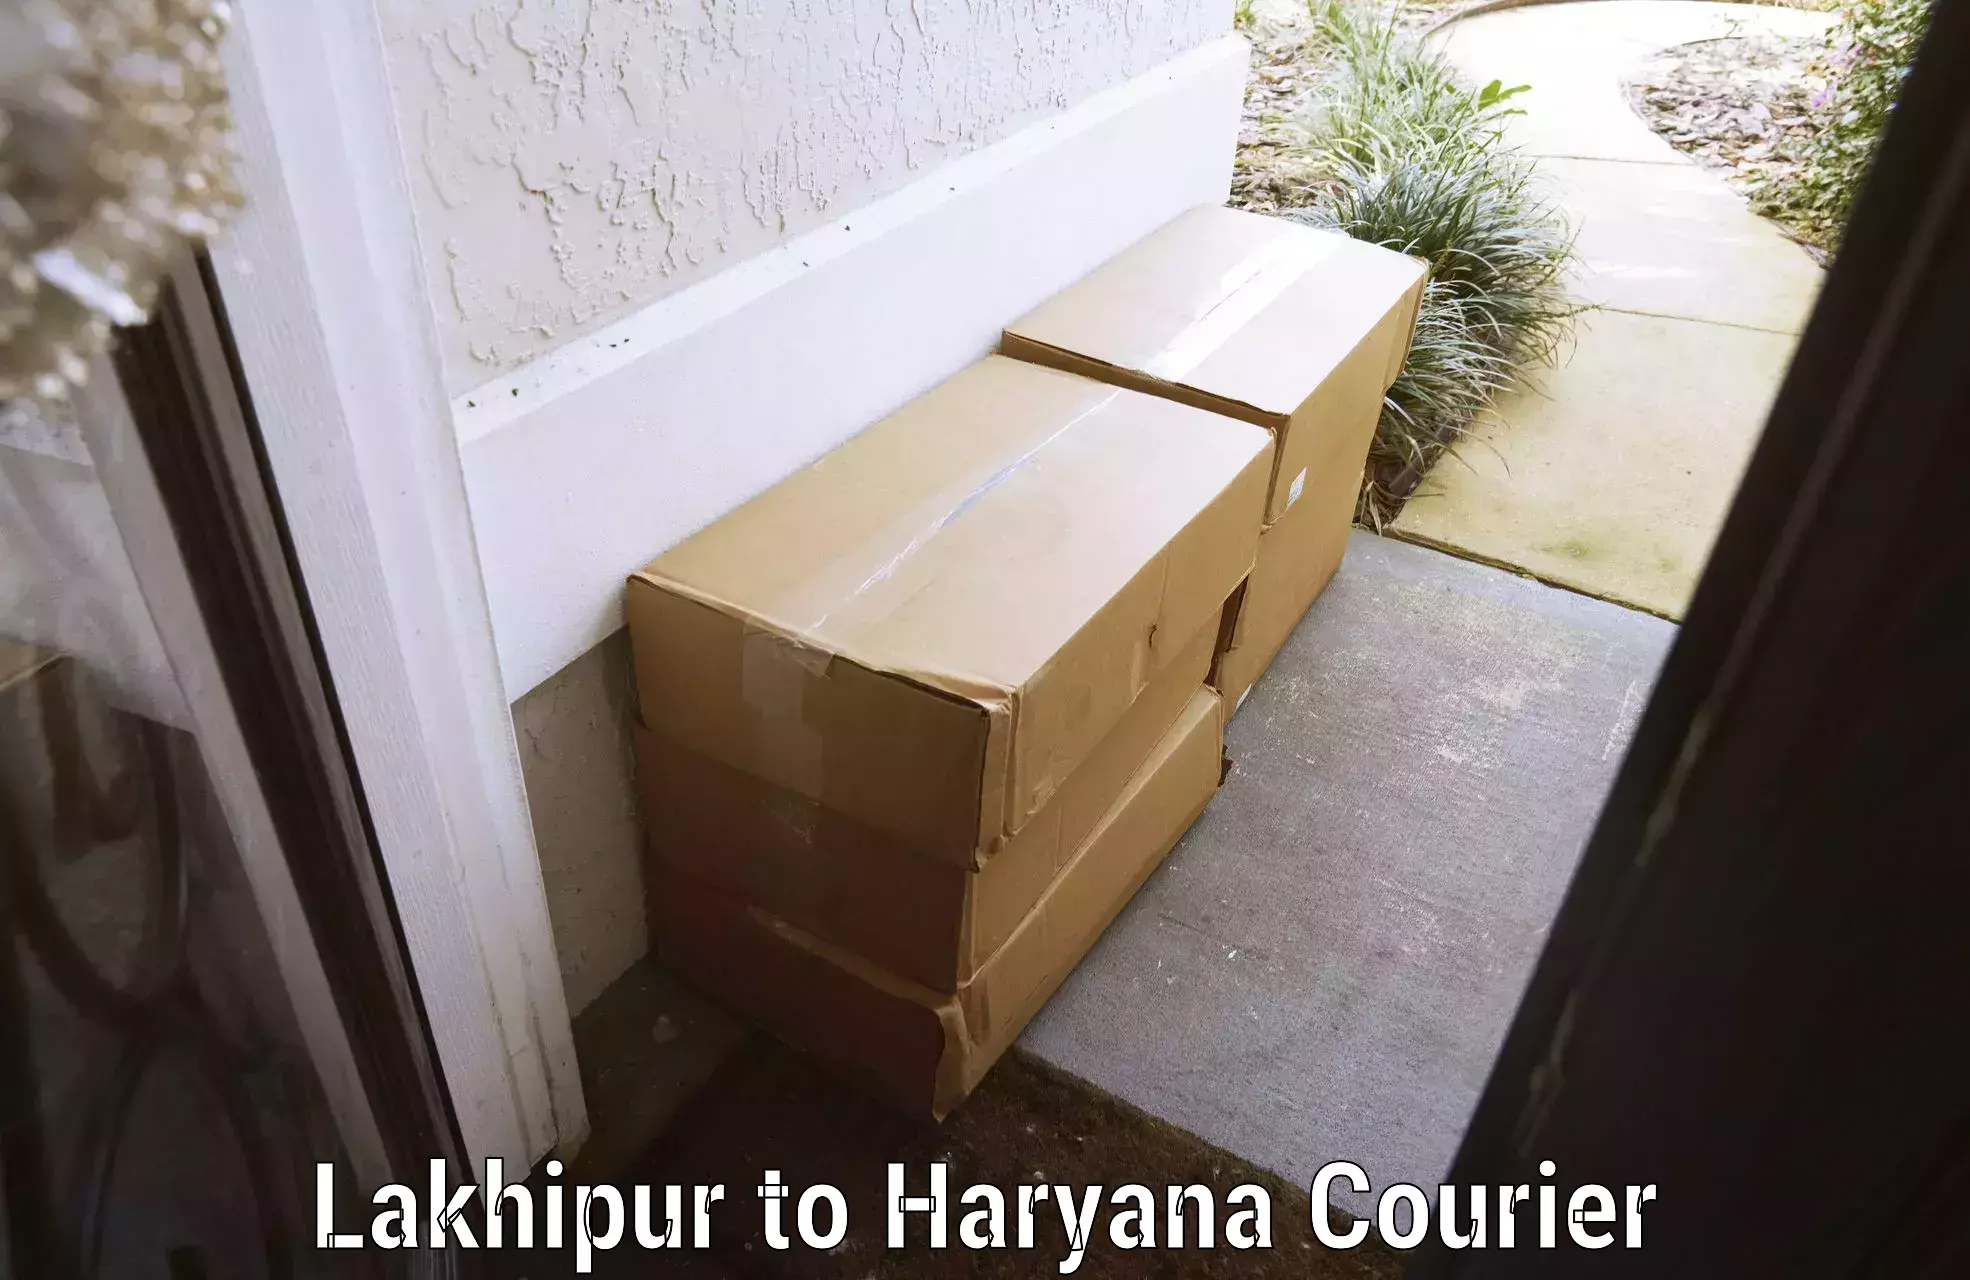 Express baggage shipping Lakhipur to Hansi